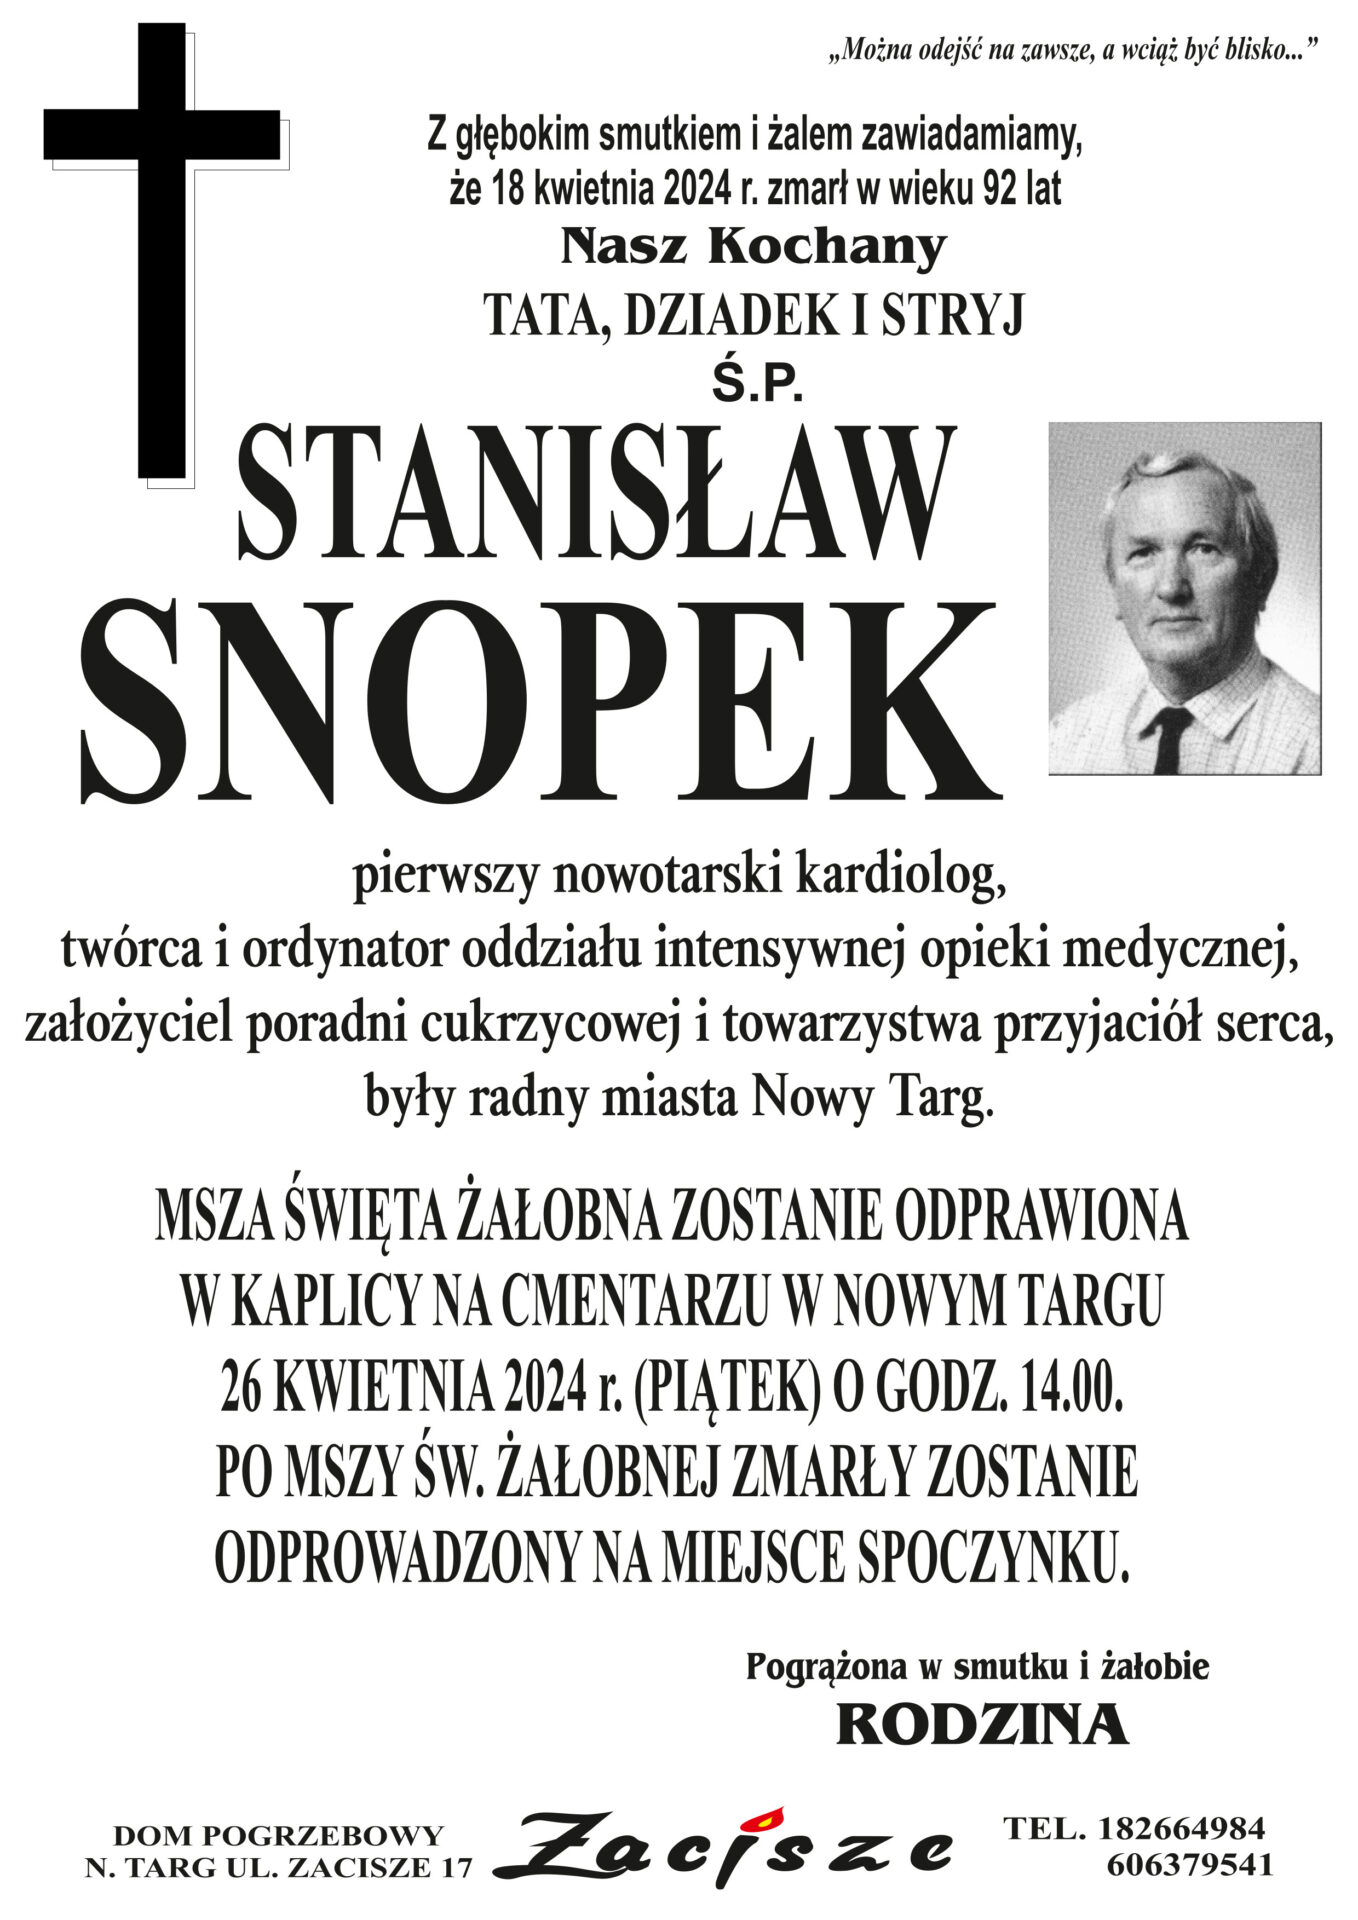 Stanisław Snopek